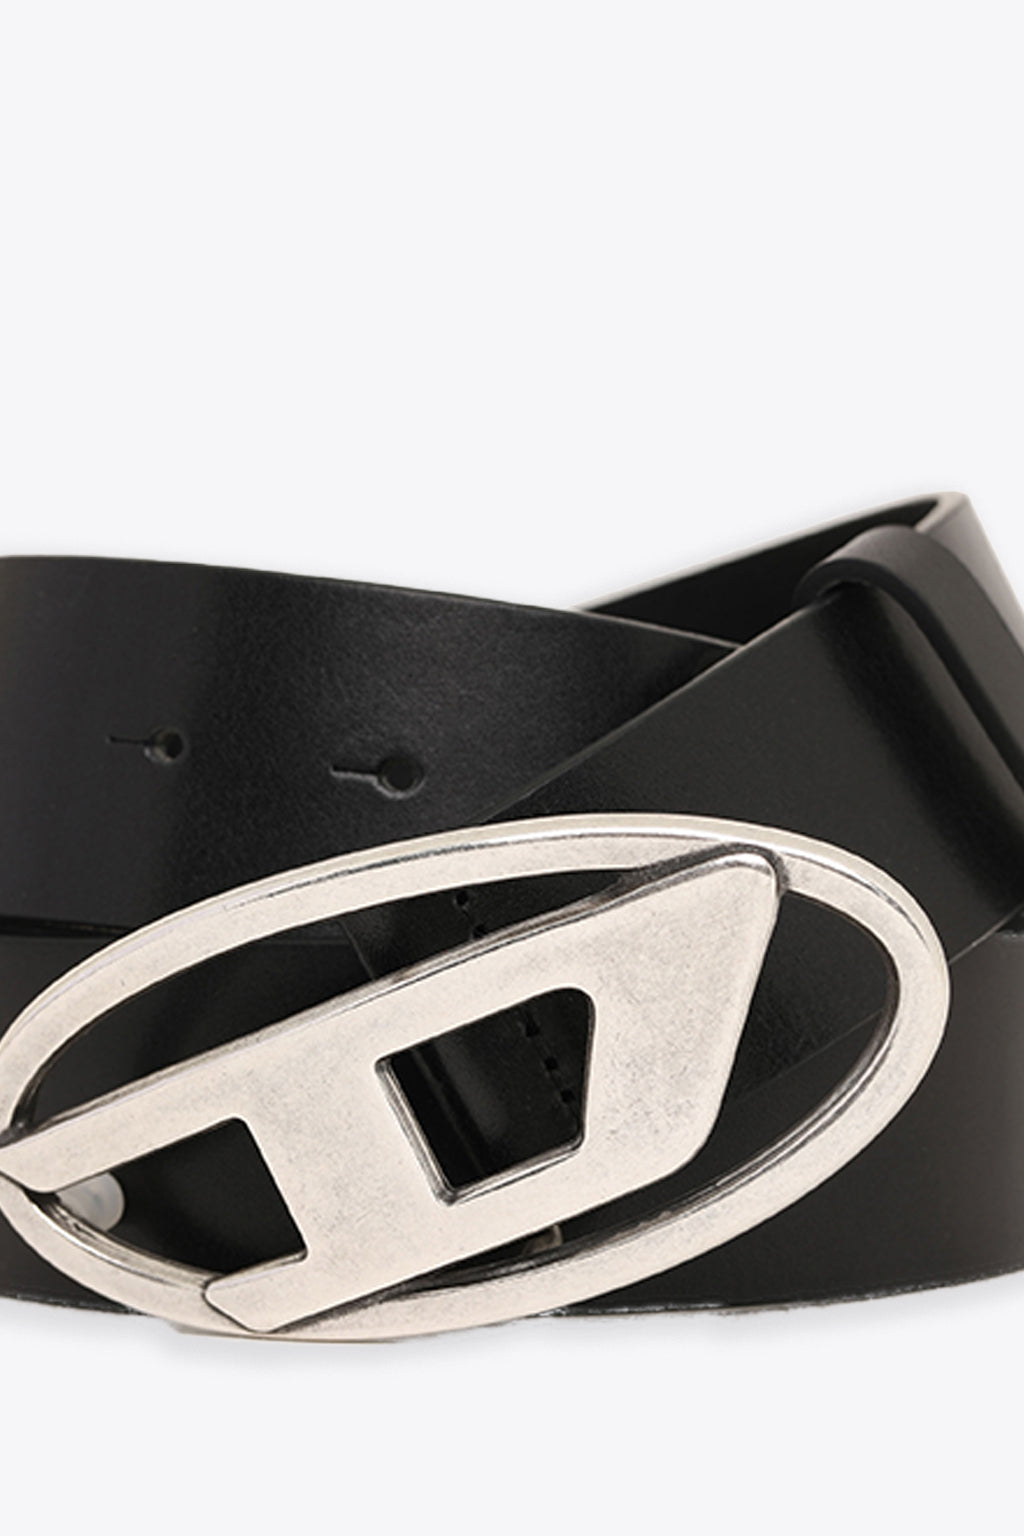 alt-image__Black-leather-belt-with-Oval-D-buckle---B-1DR